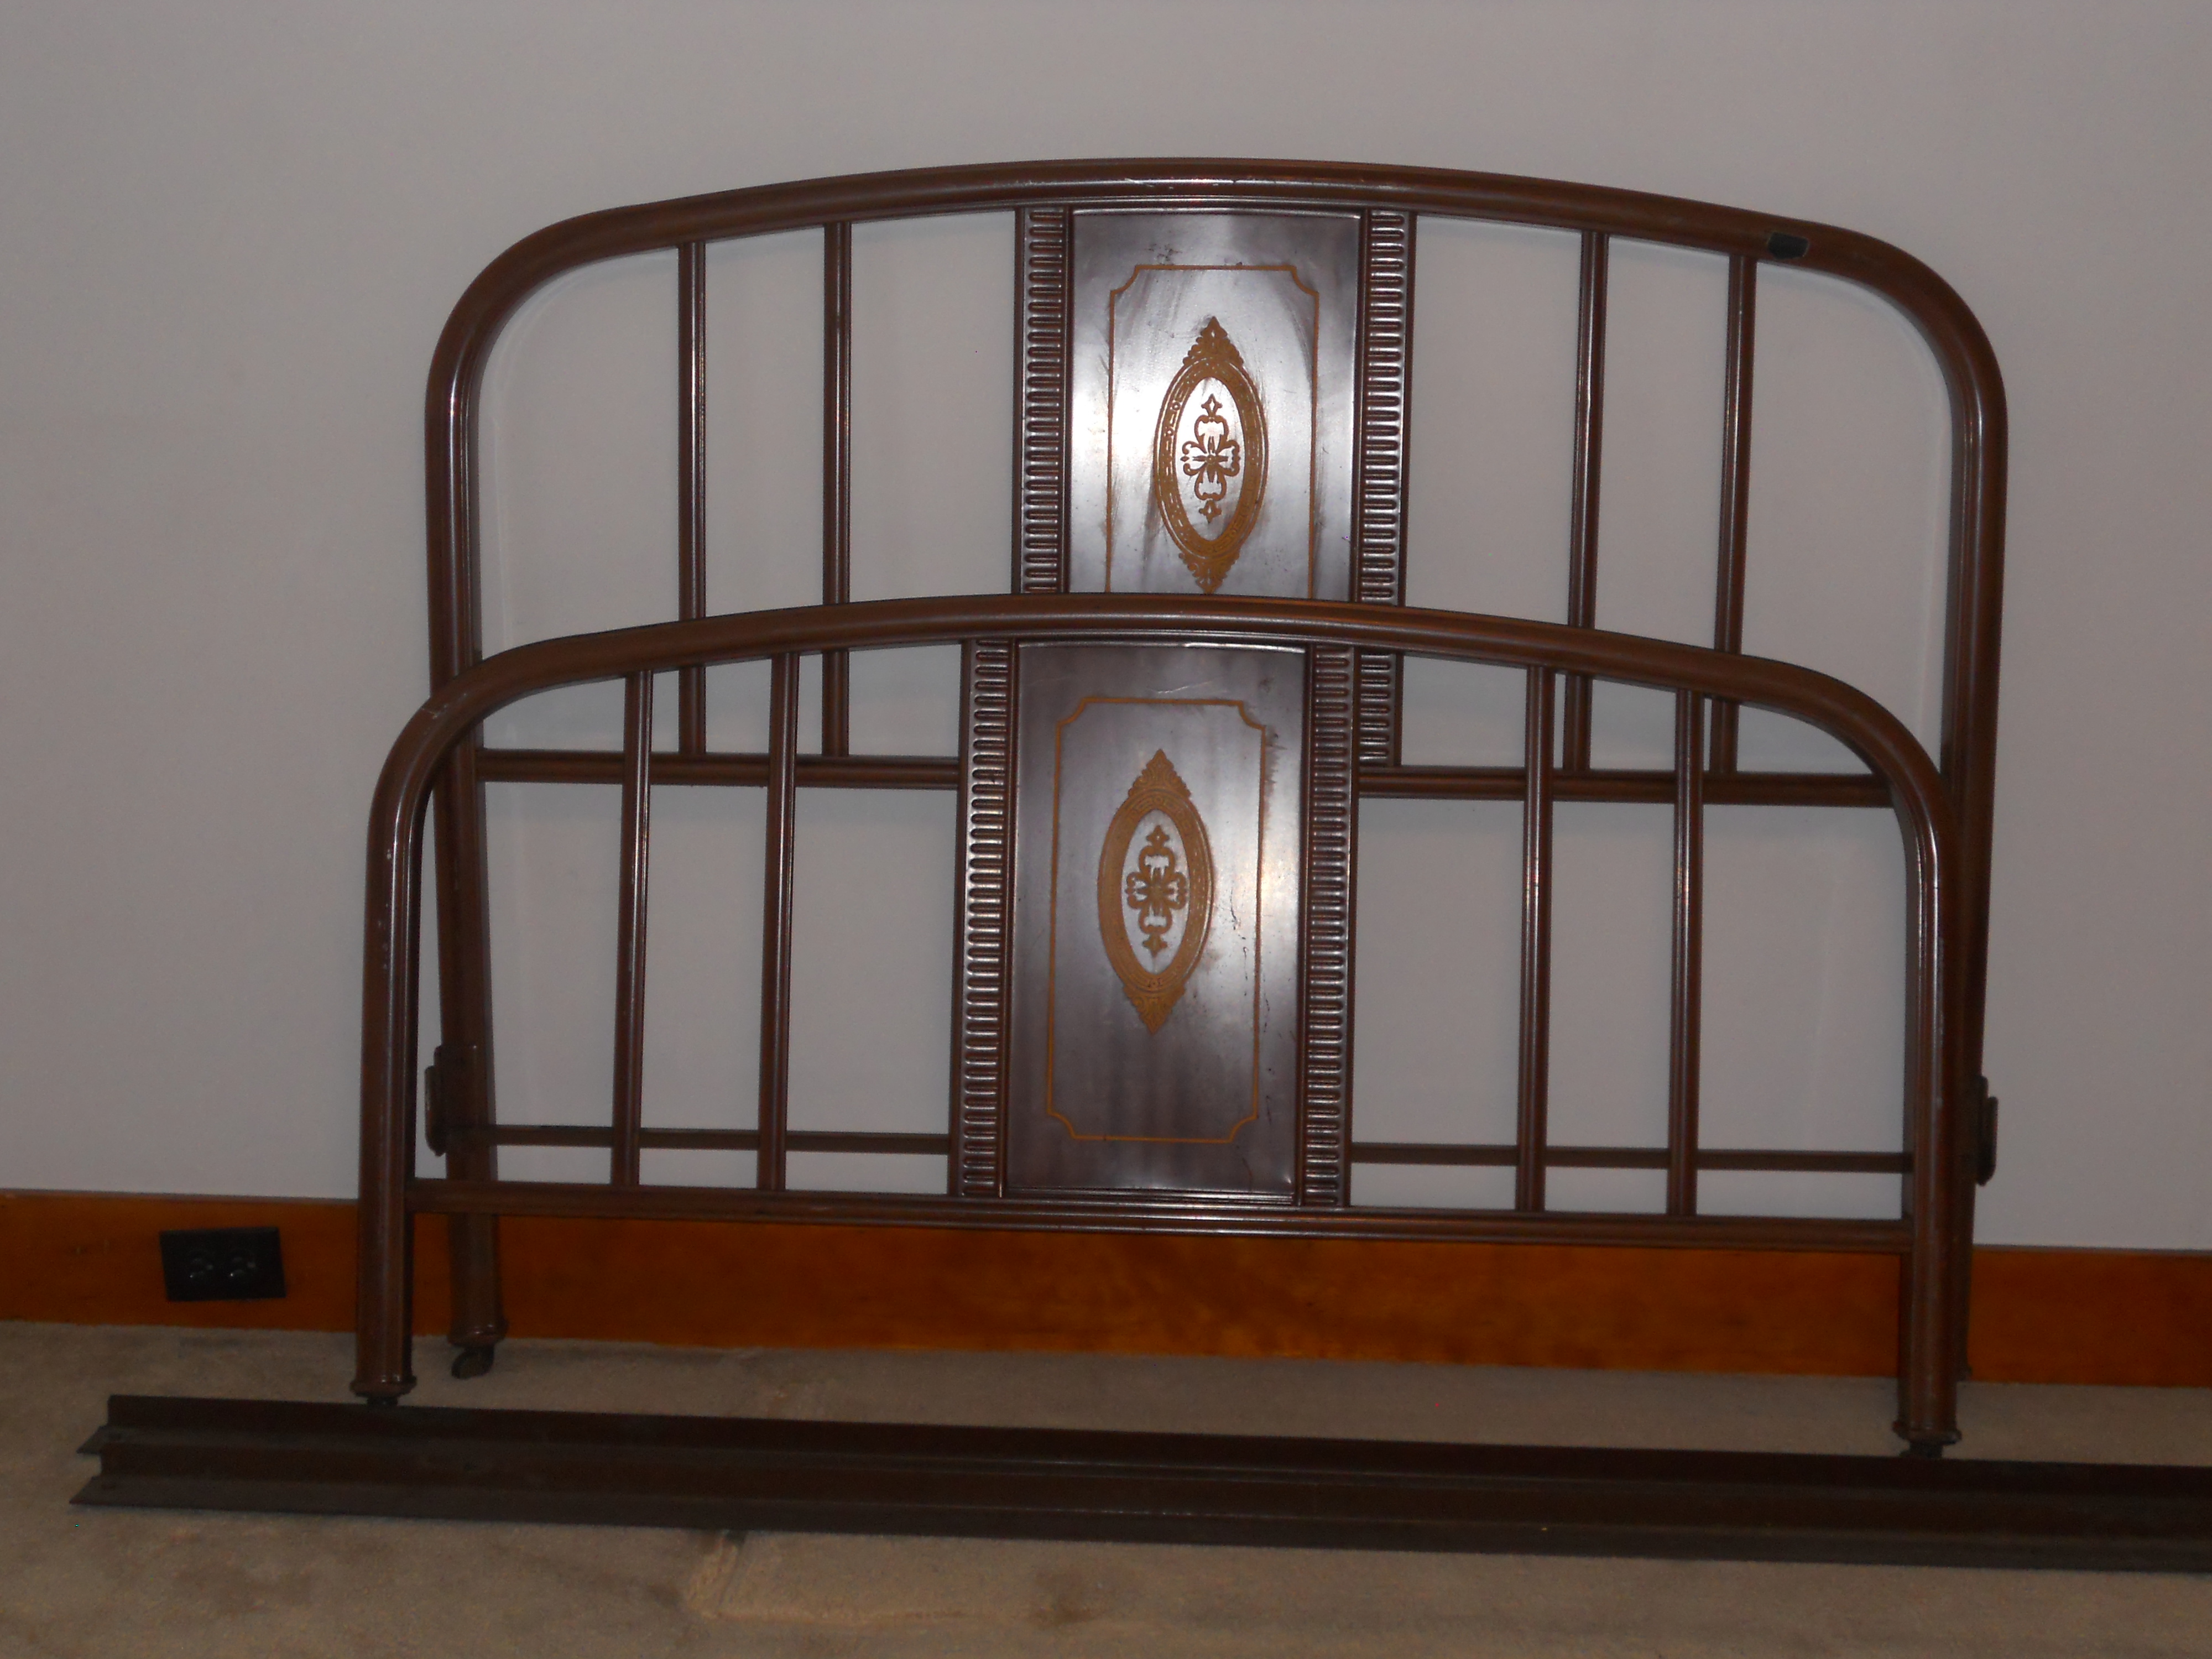 Vintage Metal Bed Frame 101